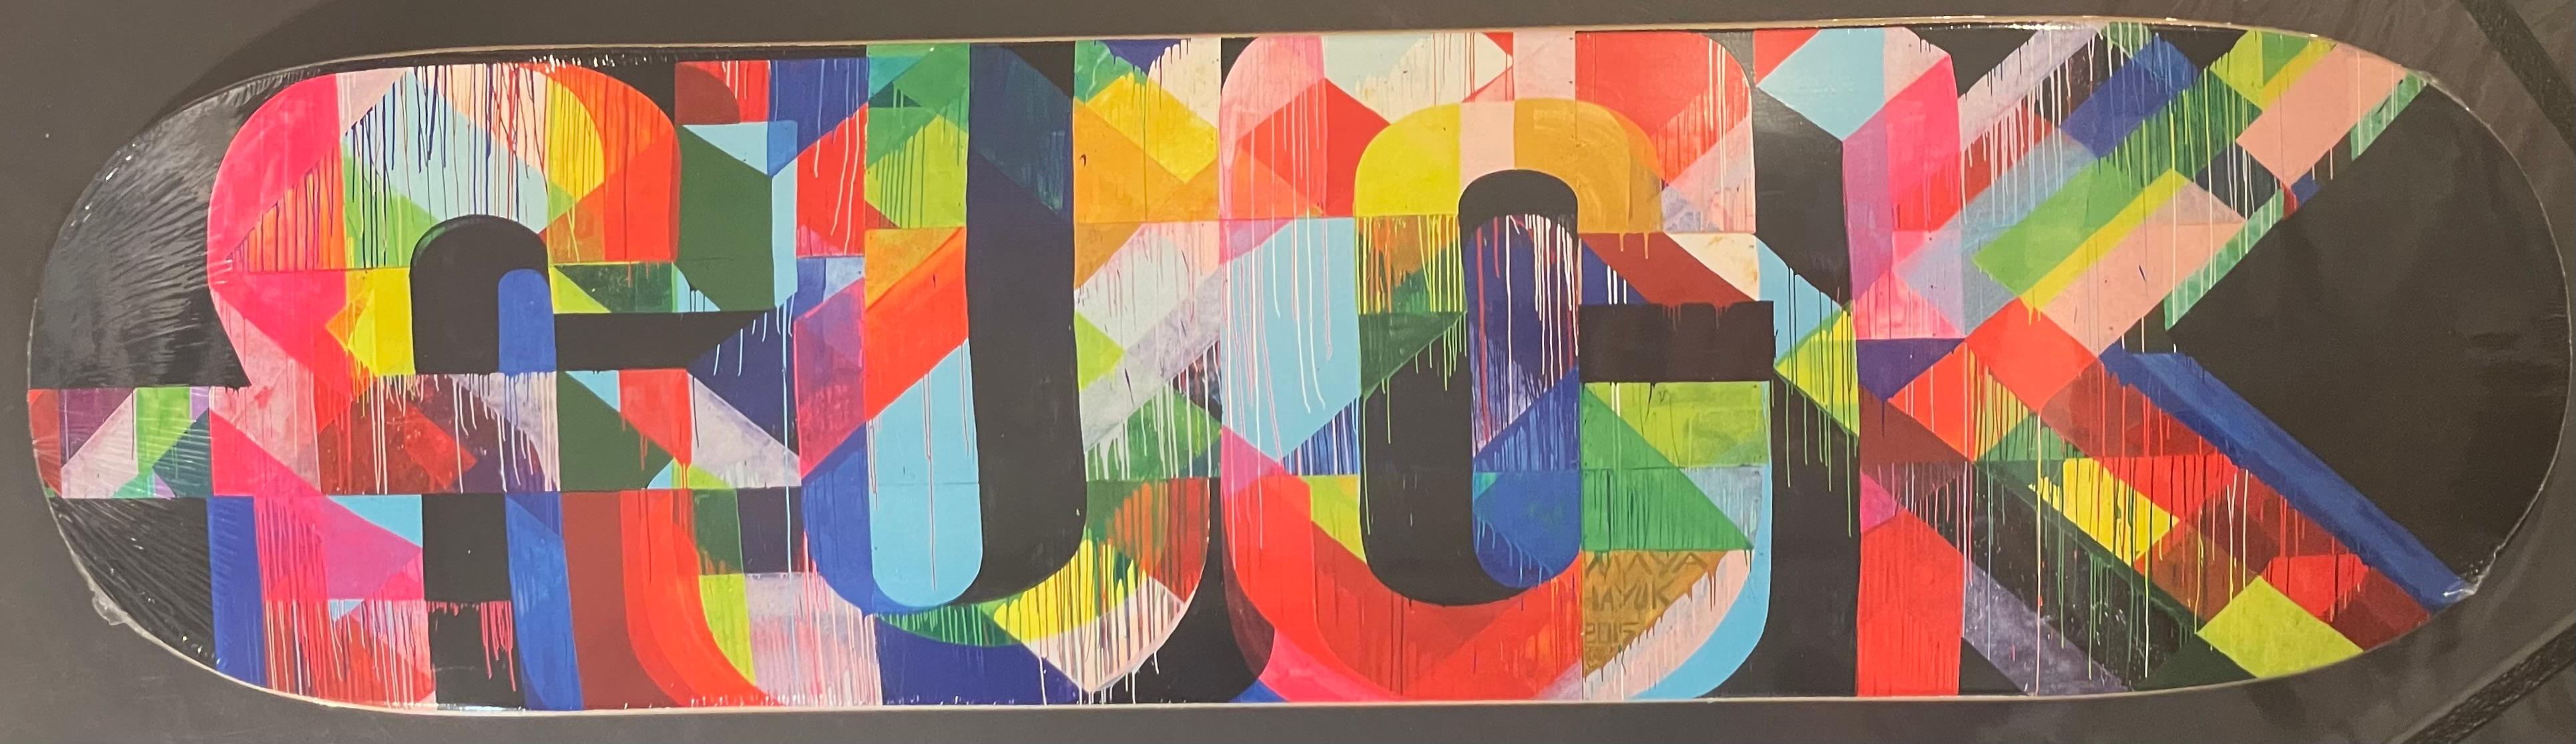 „FUCK“ Maya Hayuk, Siebdruck in Farben auf Skate-Deck, zeitgenössische Straßenkunst 